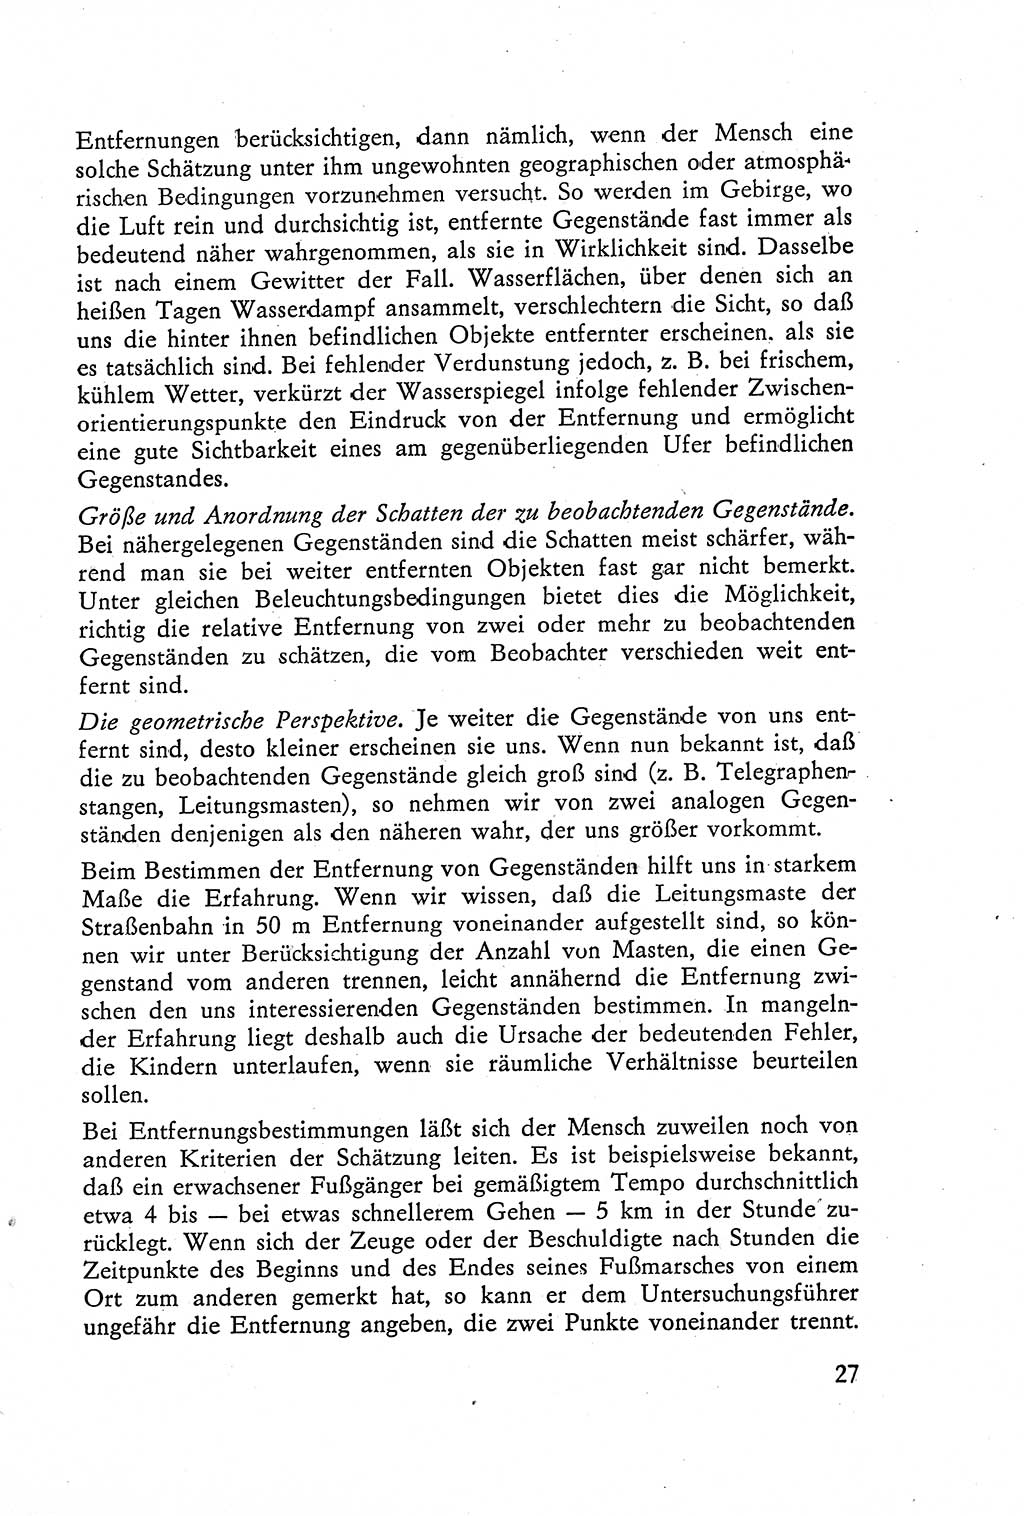 Die Vernehmung [Deutsche Demokratische Republik (DDR)] 1960, Seite 27 (Vern. DDR 1960, S. 27)